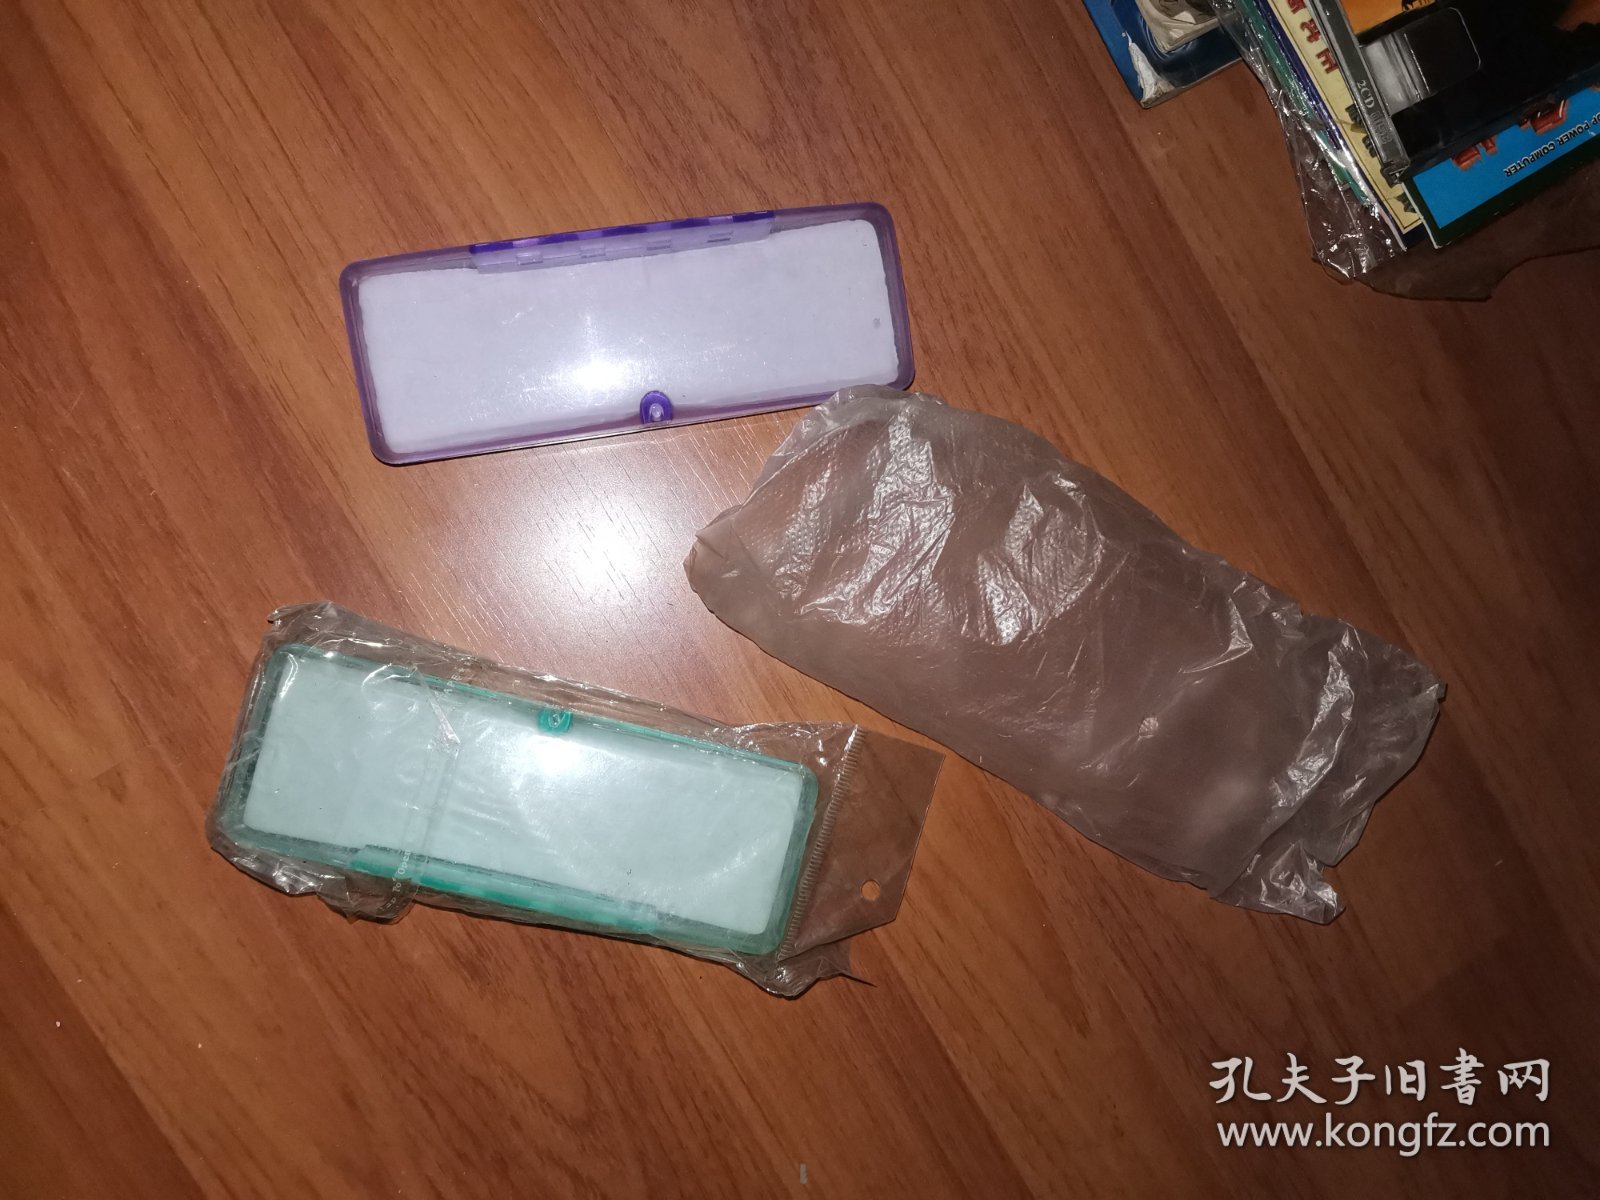 3个不同样式、颜色的塑料眼镜盒（合售）库存品